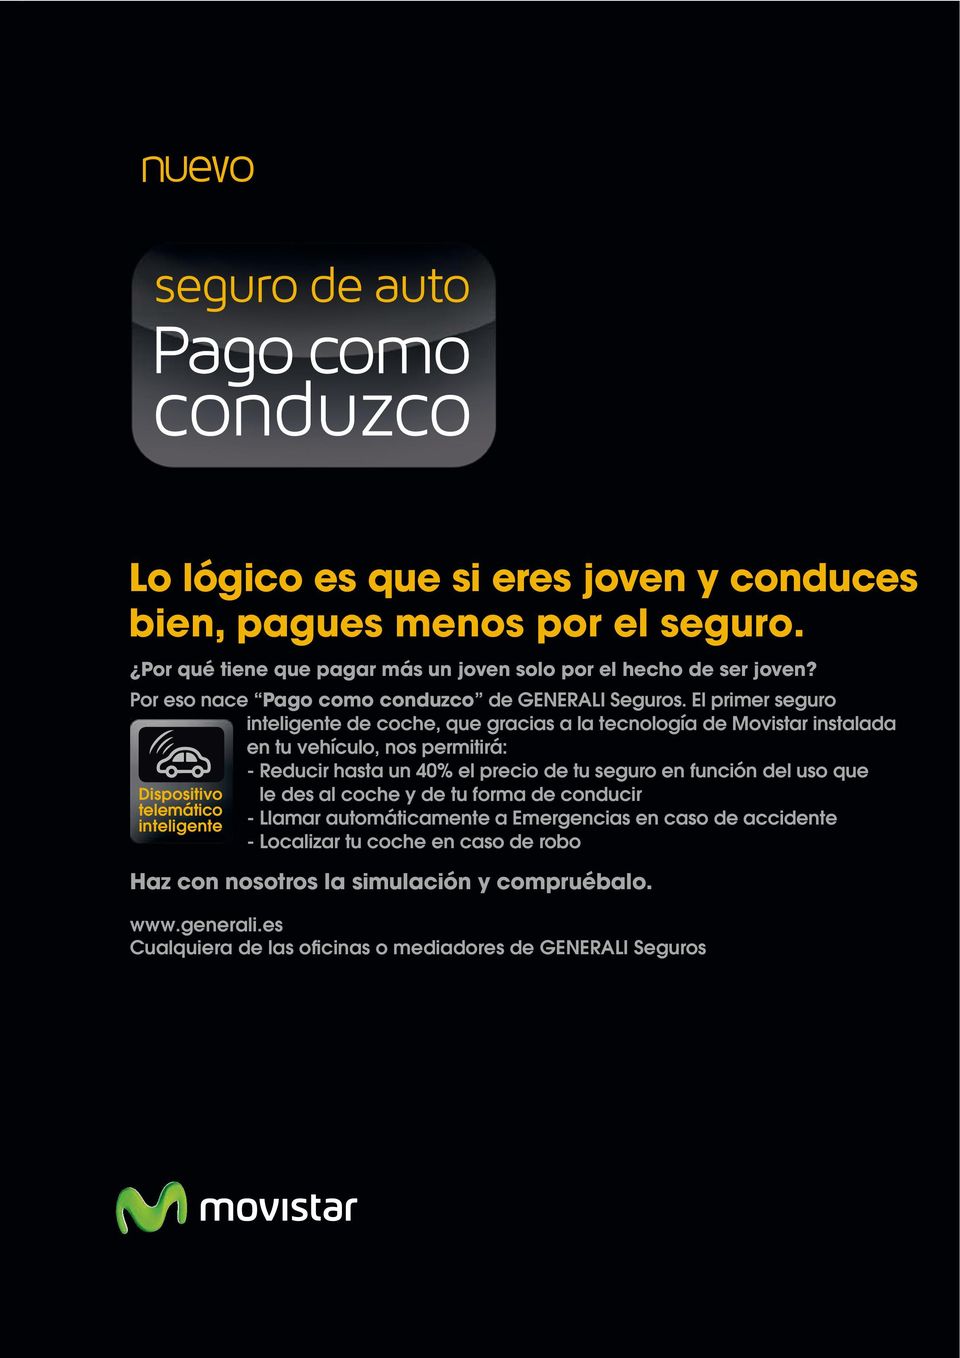 El primer seguro inteligente de coche, que gracias a la tecnología de Movistar instalada en tu vehículo, nos permitirá: Dispositivo telemático inteligente - Reducir hasta